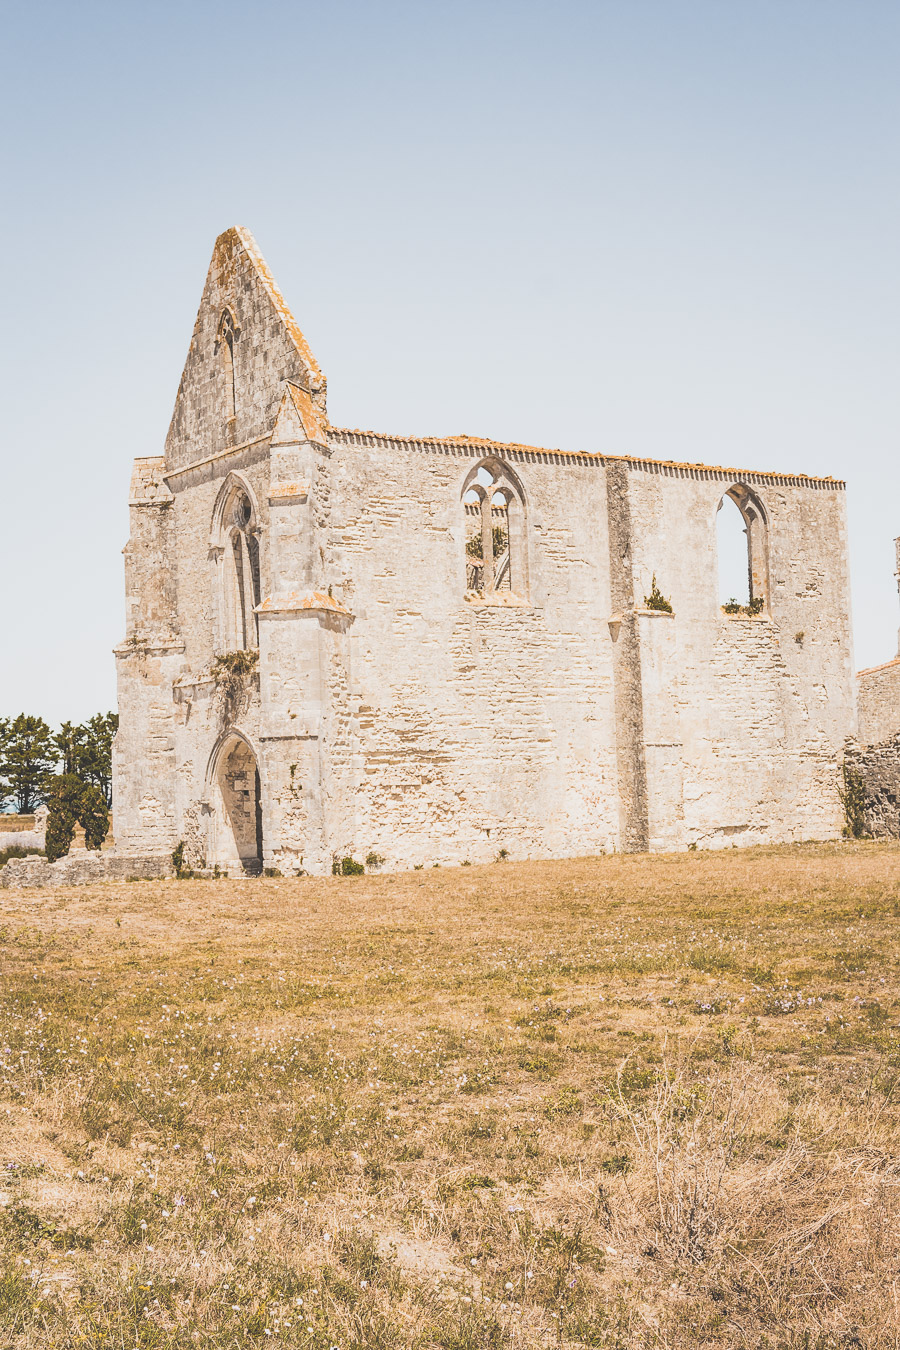 Abbaye Notre-Dame-de-Ré